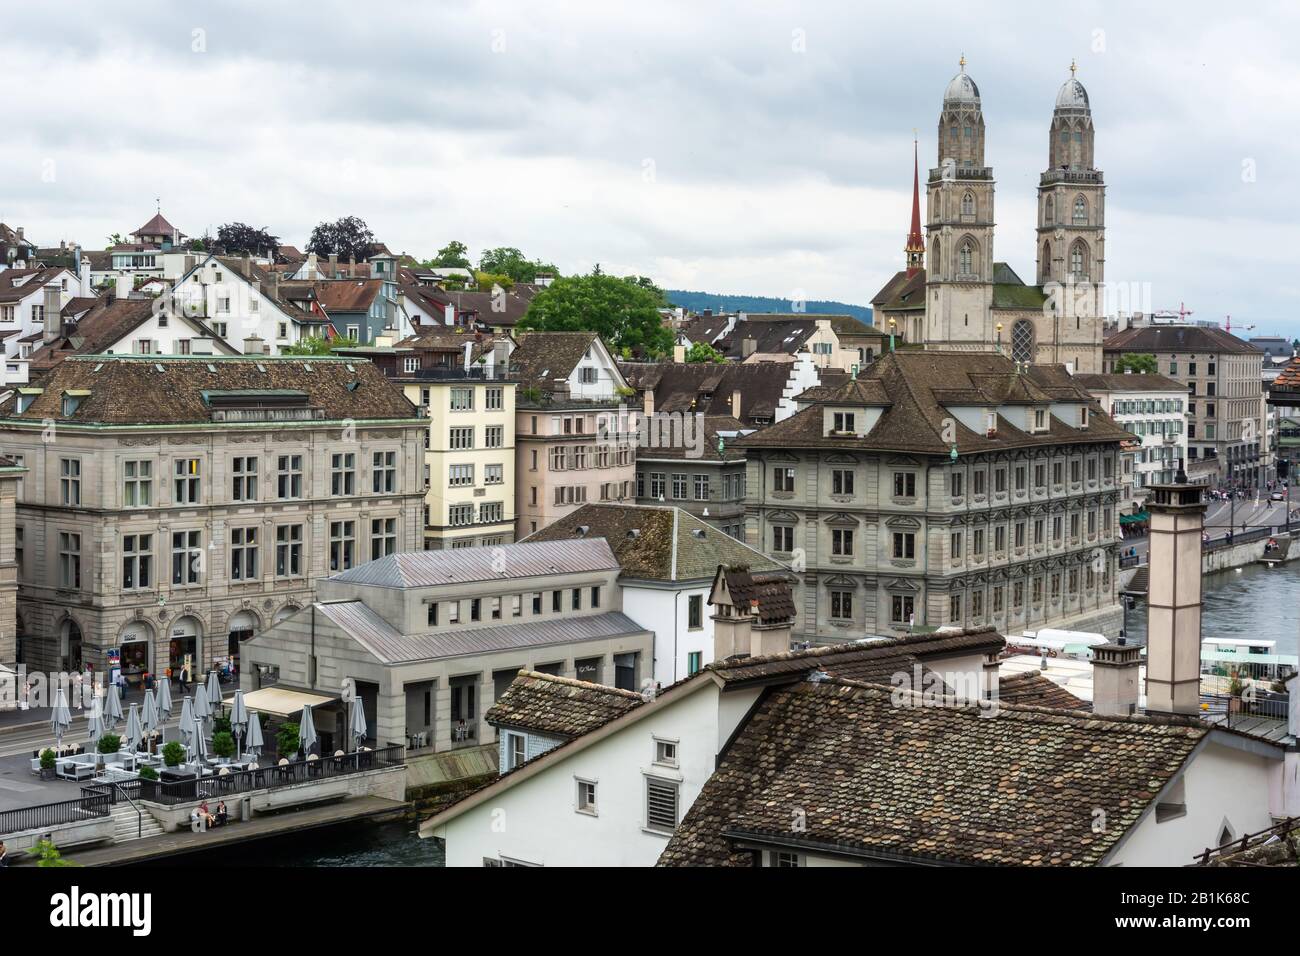 Zurigo, Svizzera – 25 Giugno 2016. Vista sul centro di Zurigo verso la chiesa Grossmunster, con proprietà commerciali e persone. Foto Stock